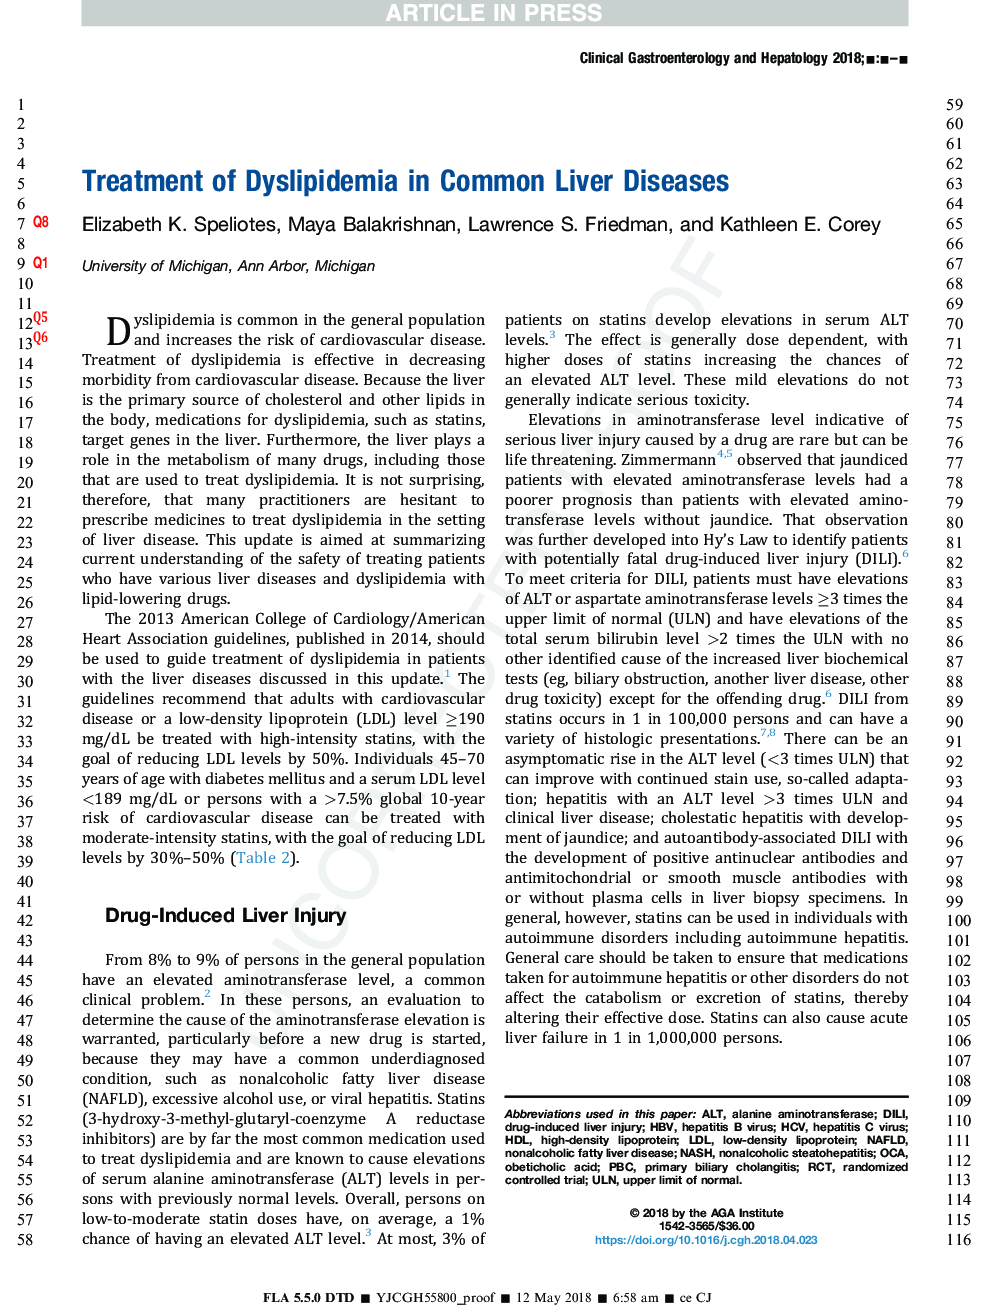 درمان دیس لیپیدمی در بیماری های کبدی مشترک 